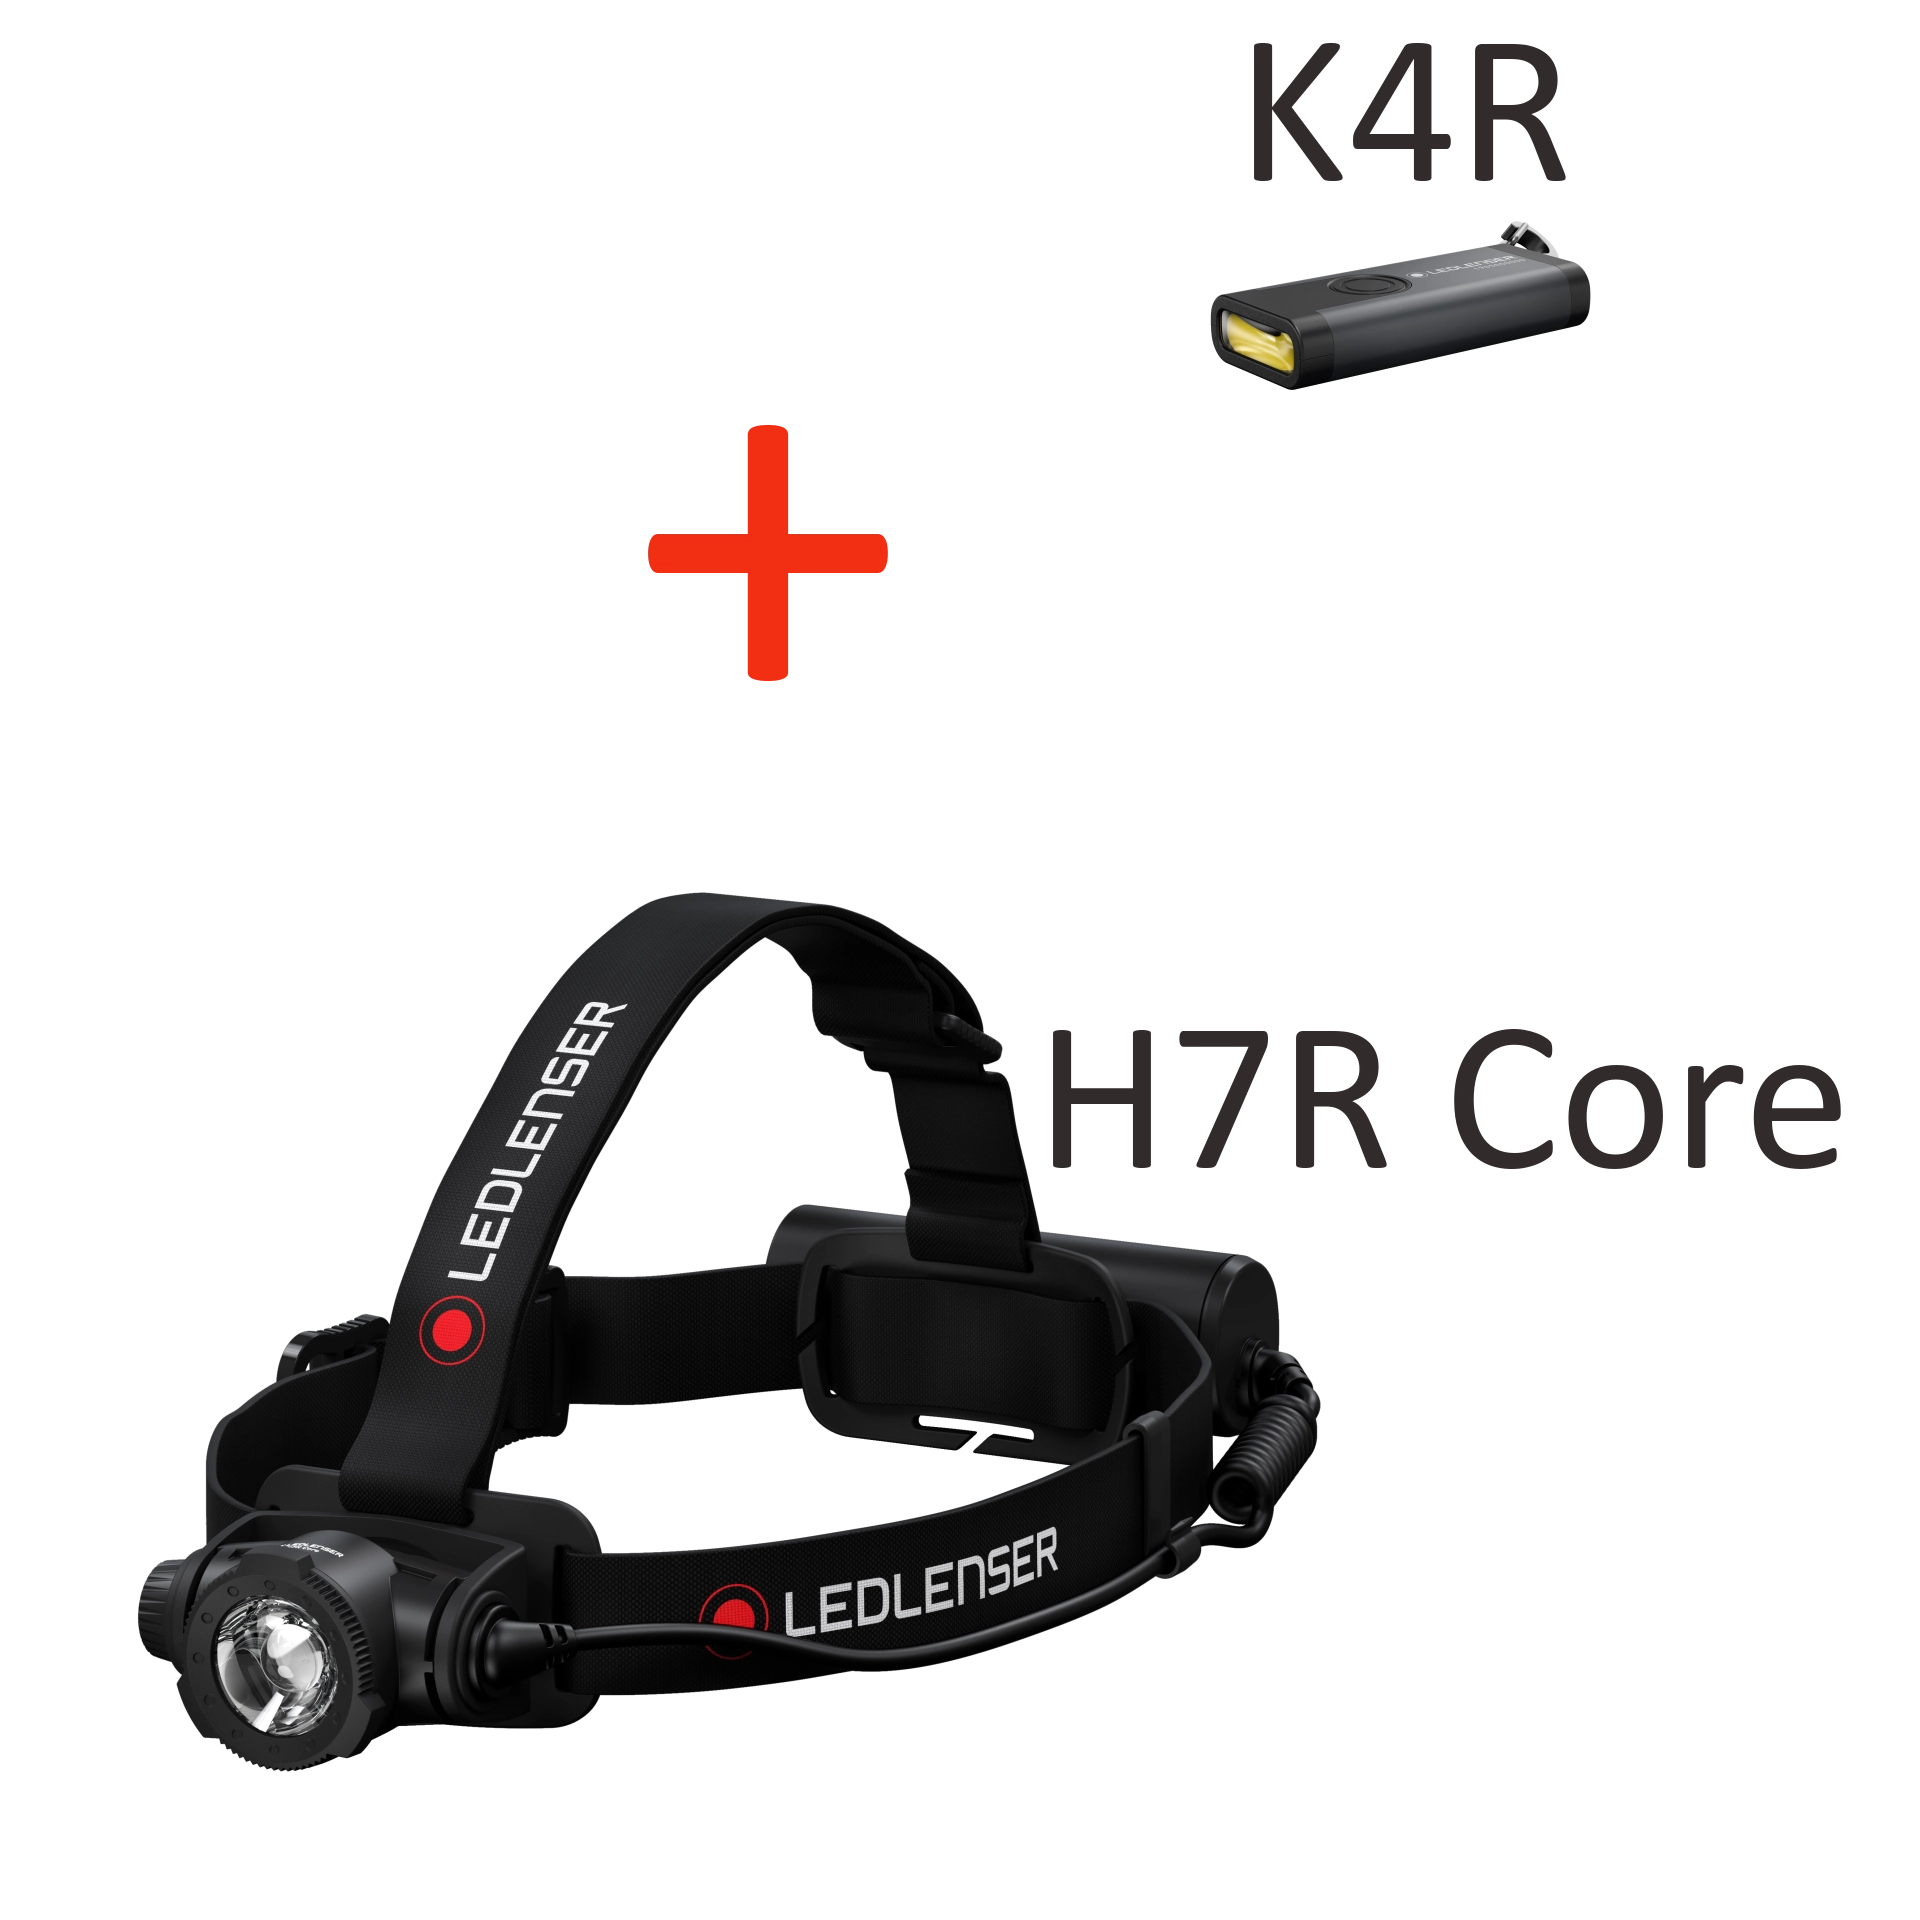 LIMITOWANA EDYCJA! Ledlenser H7R Core + K4R, zestaw latarek akumulatorowych, 1000lm + 120lm